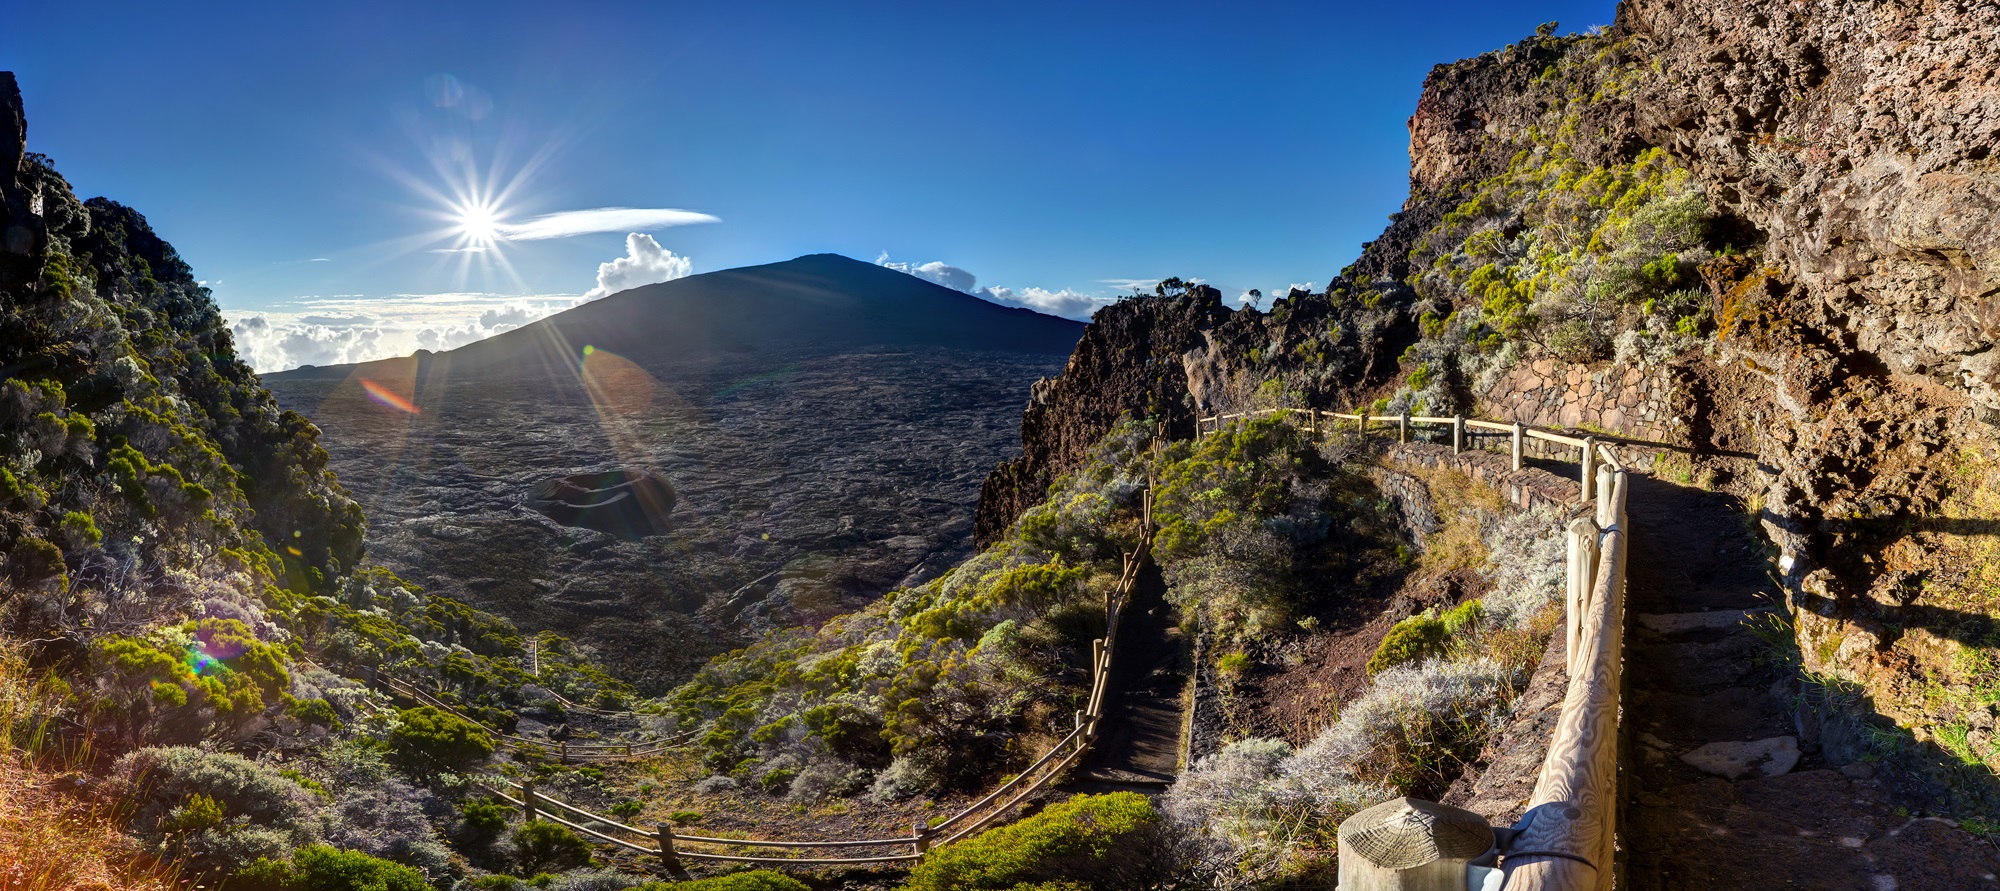 Partir à la Réunion pour découvrir le sentier de randonnée du Piton de la Fournaise. © Frog 974, Adobe